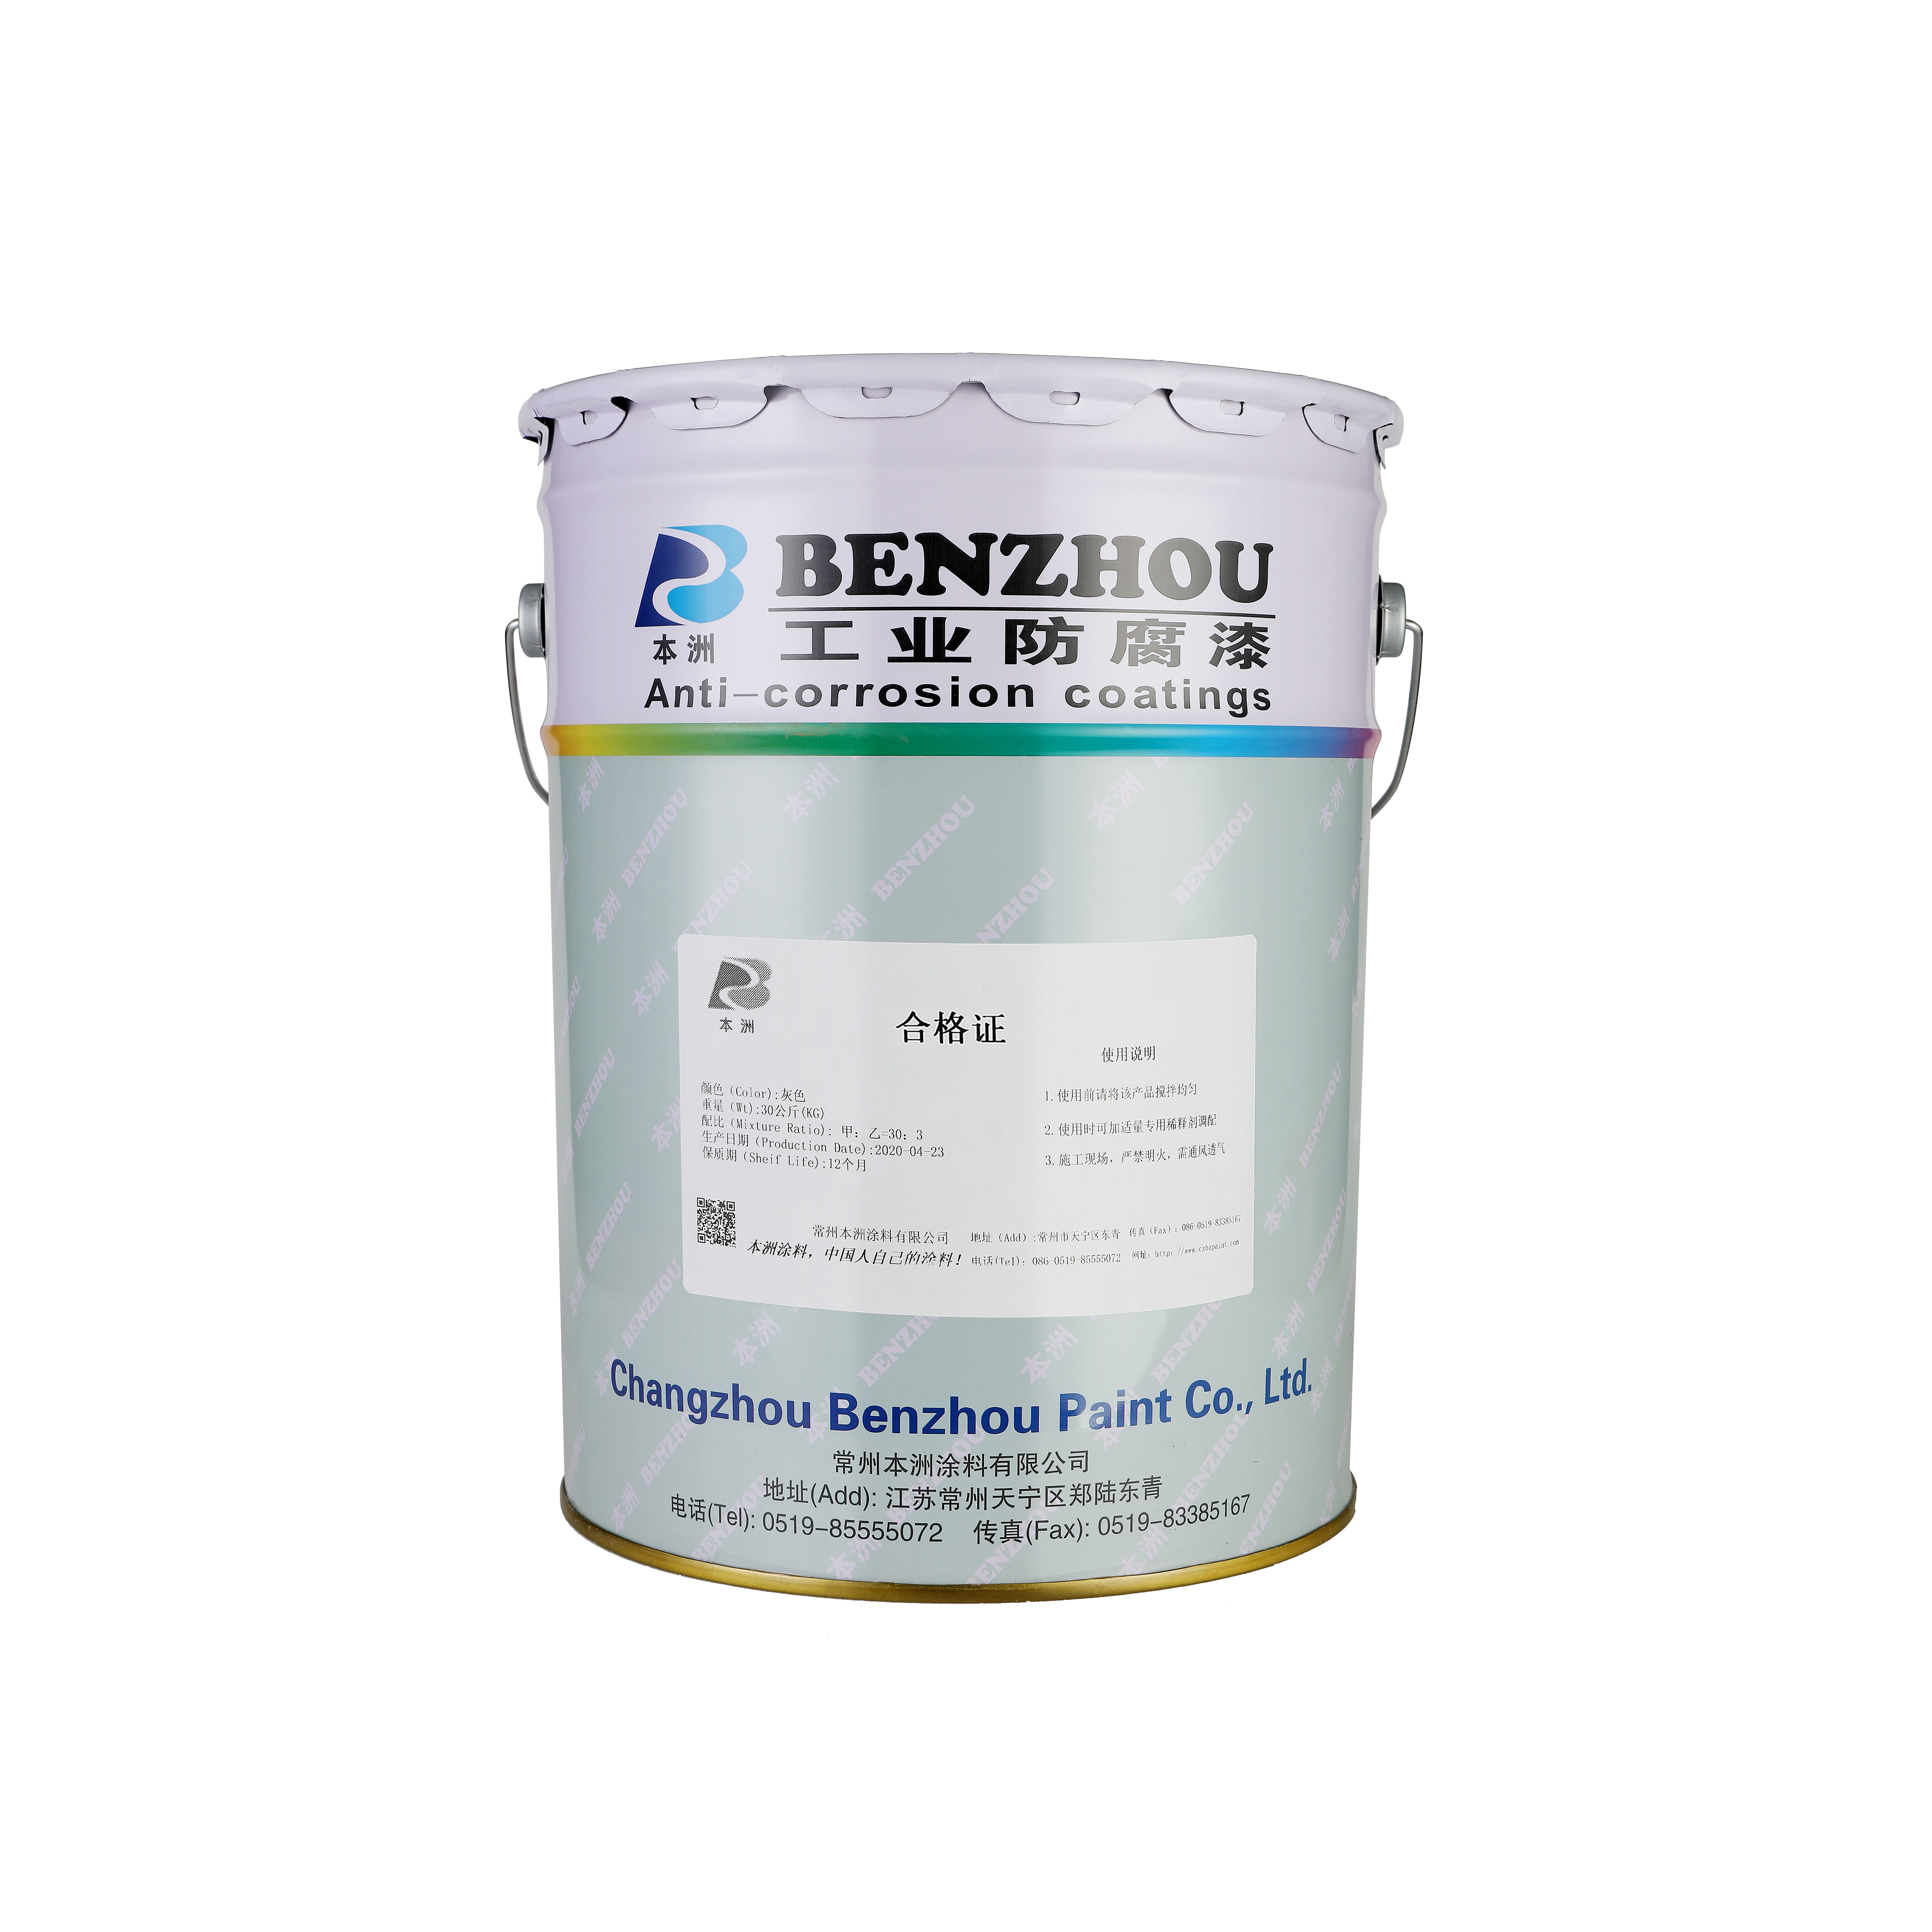 本洲水性聚氨酯树脂涂料 适用于工业设备以及机械制造的金属涂装